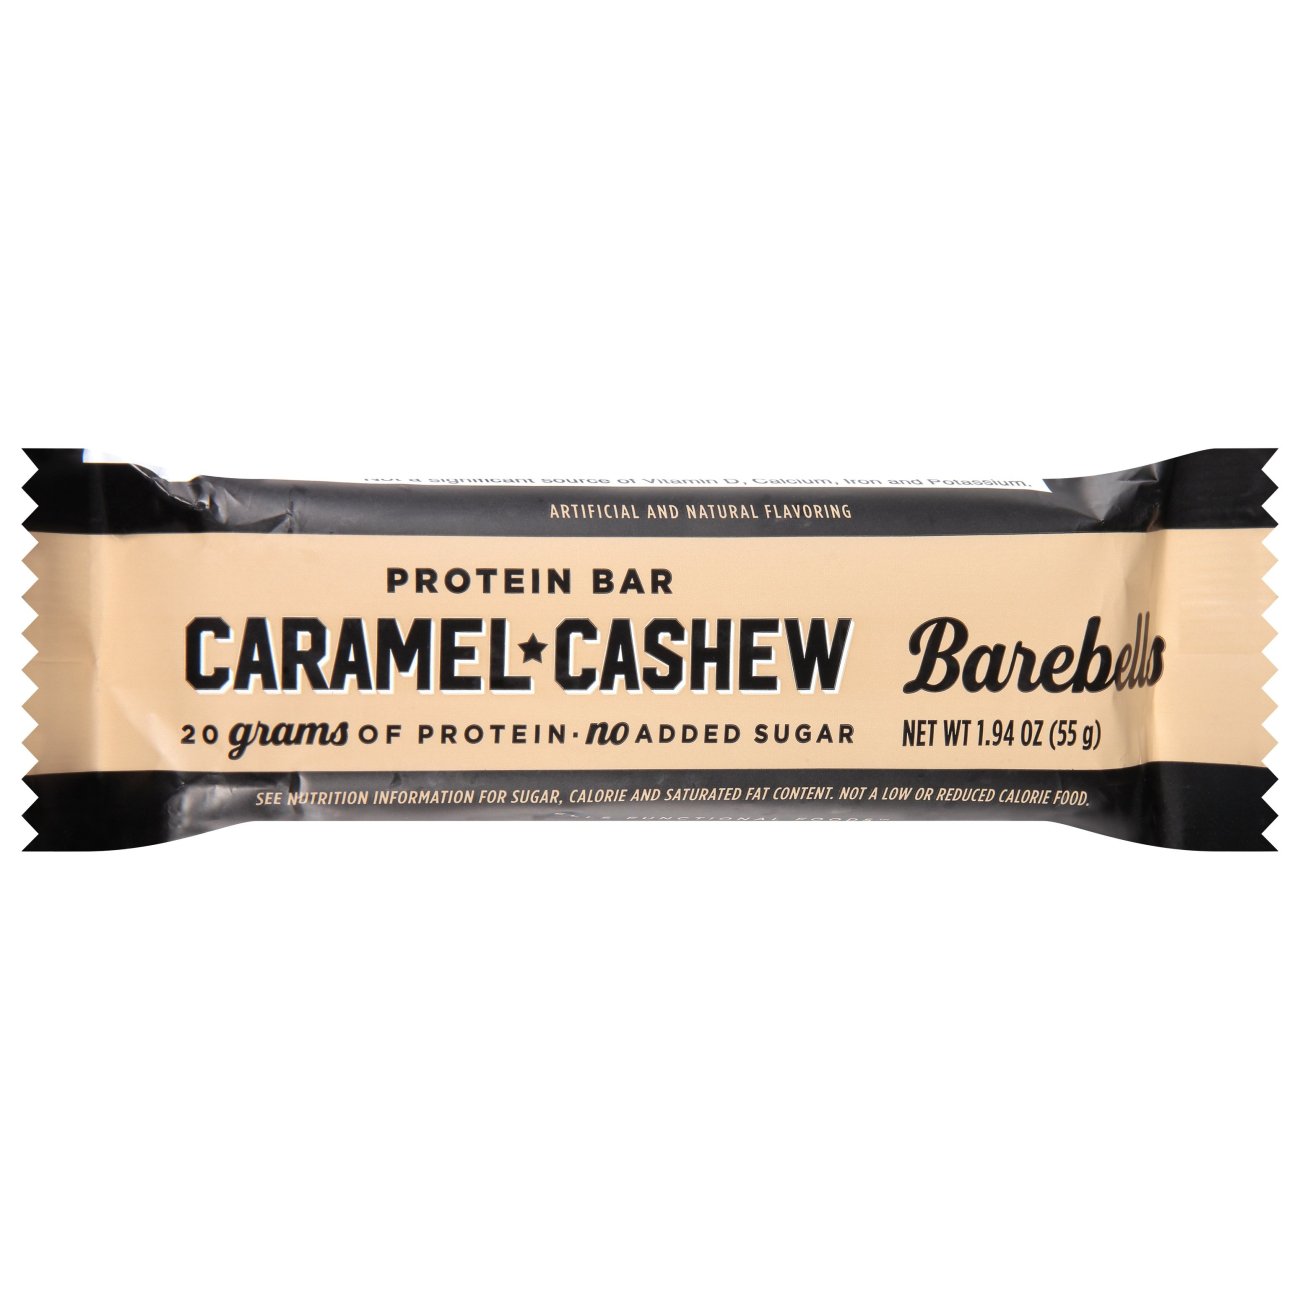 Barebells 20g Protein Bar - Caramel Cashew - Shop Granola & Snack Bars ...